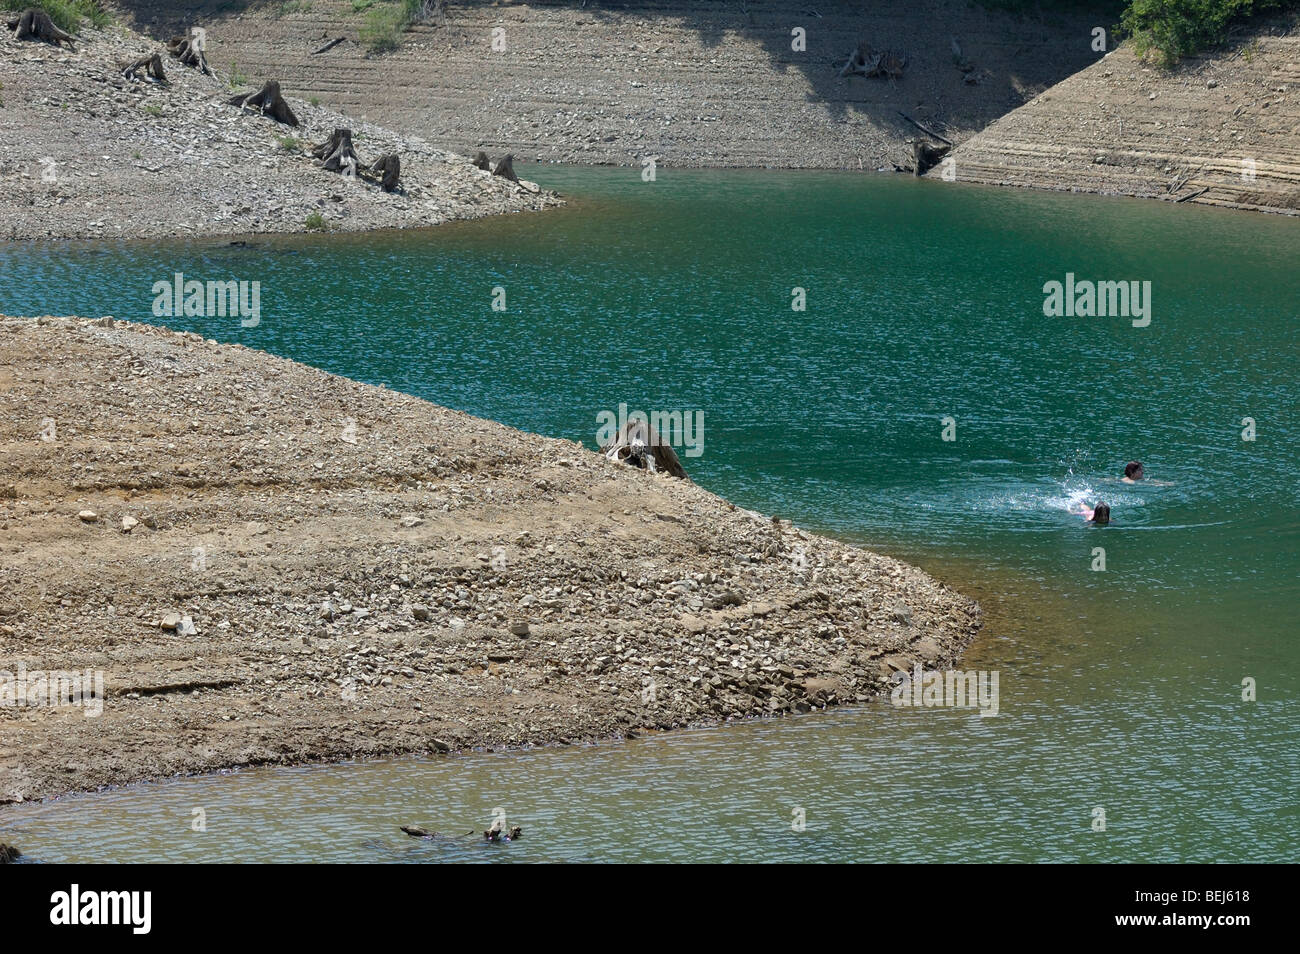 People swimming in Lokvarsko jezero lake near Lokve, Gorski kotar, Croatia, Europe Stock Photo